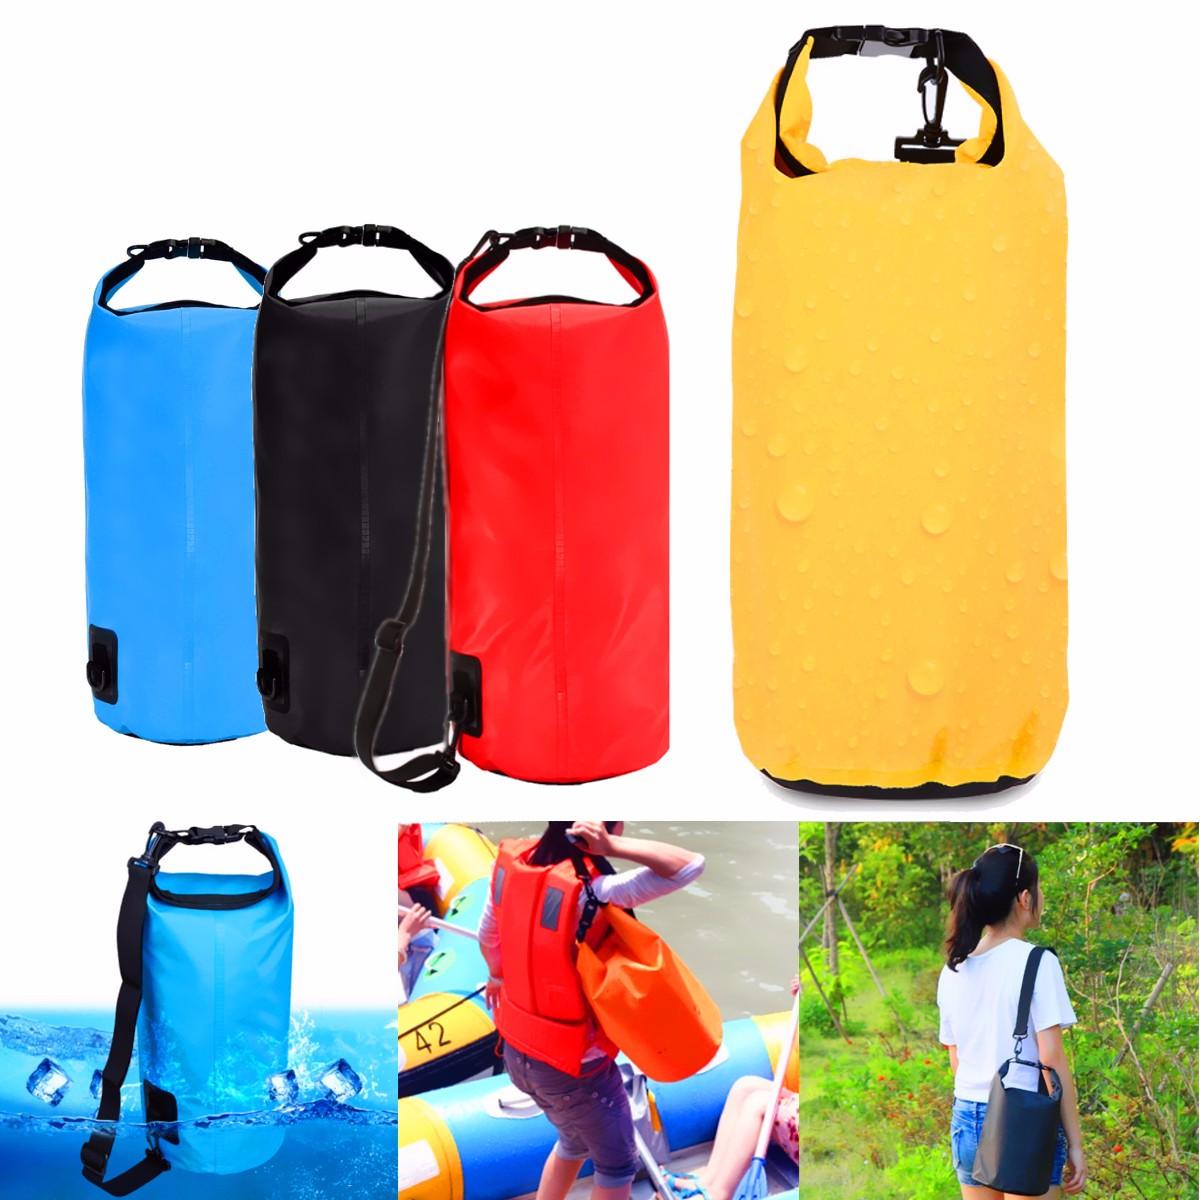 waterproof bags for storage